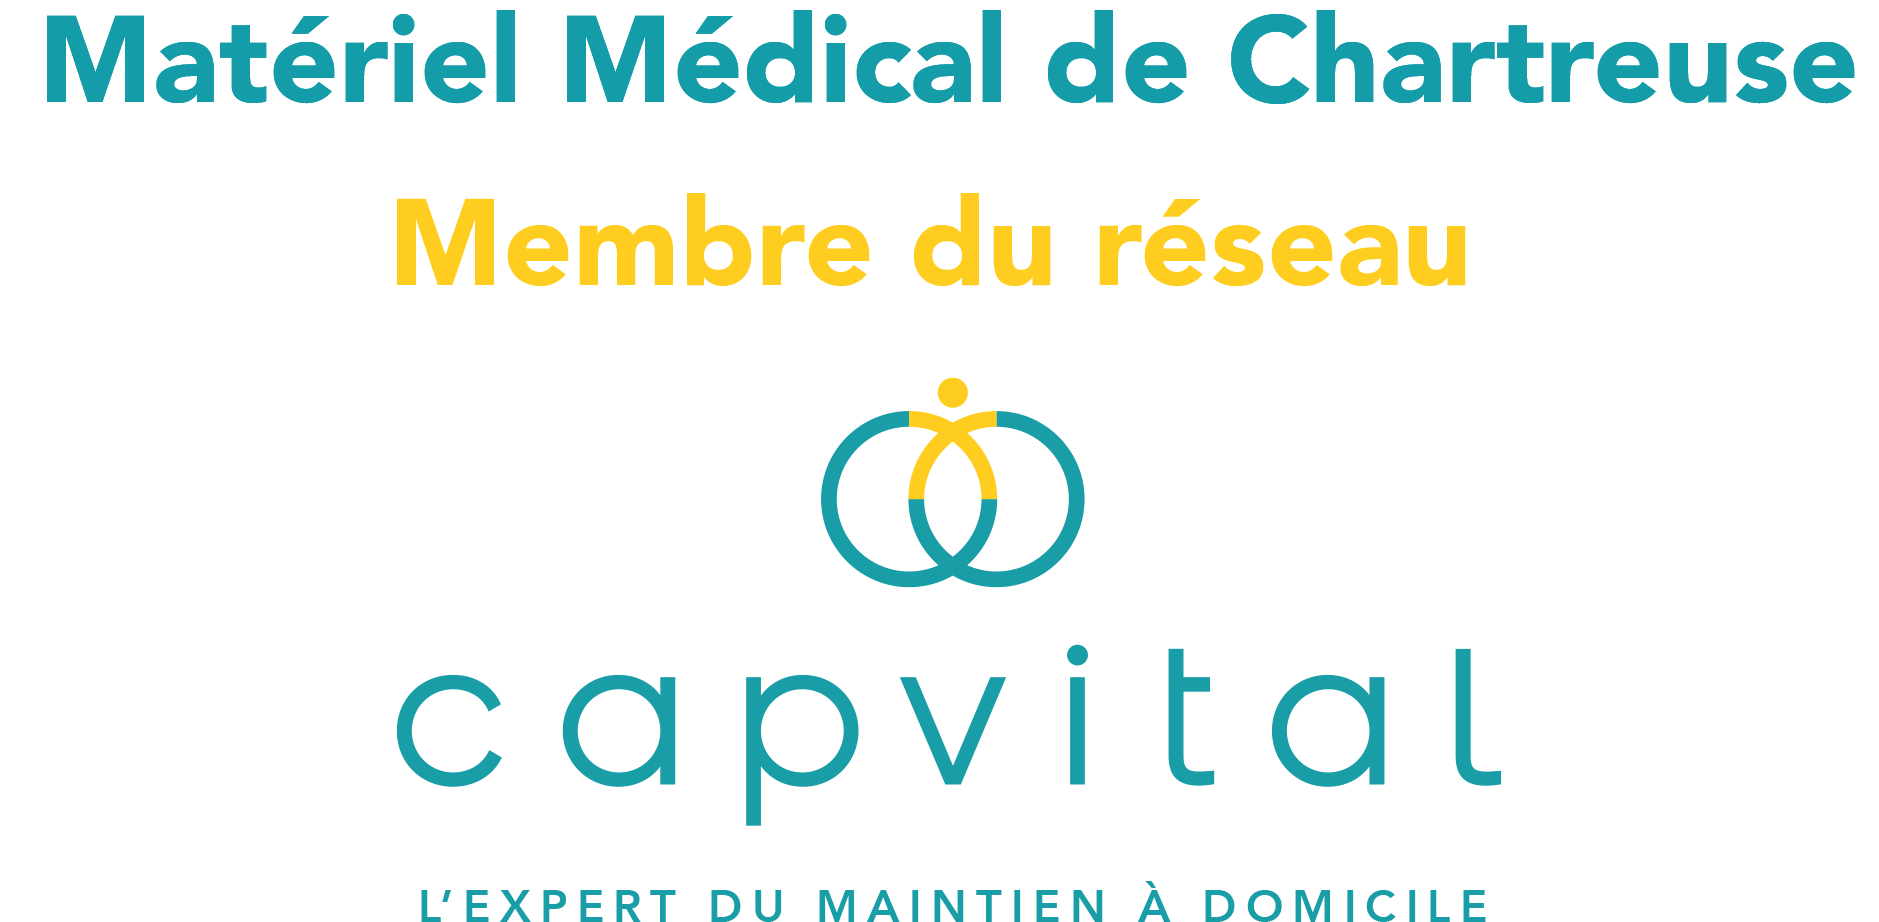 Matériel Médical de Chartreuse - Spécialistes du maintien à domicile